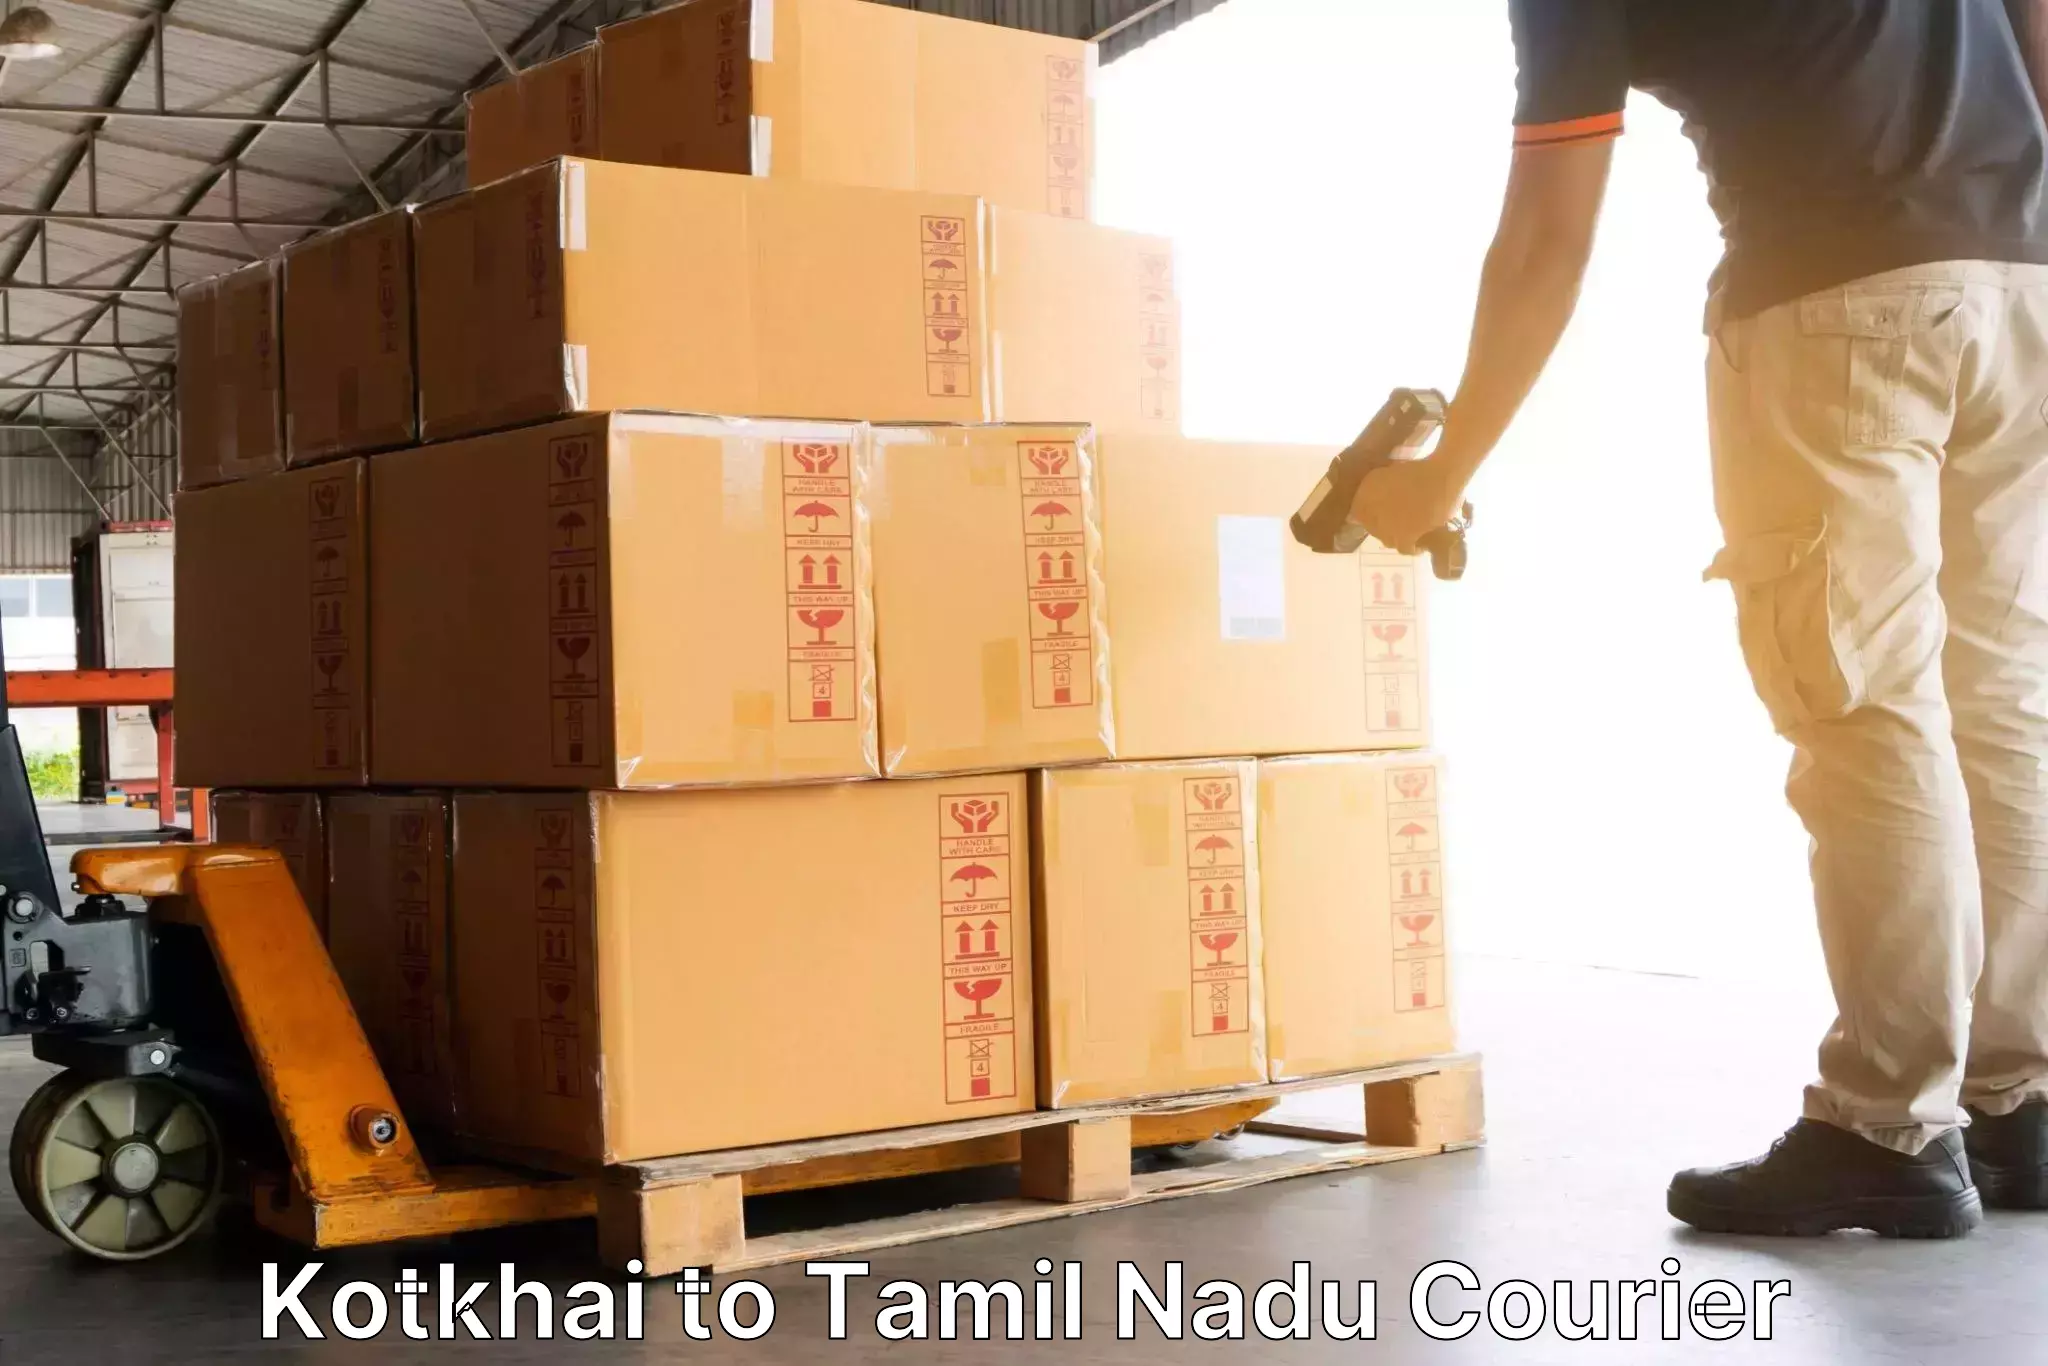 Efficient parcel service Kotkhai to Sivaganga